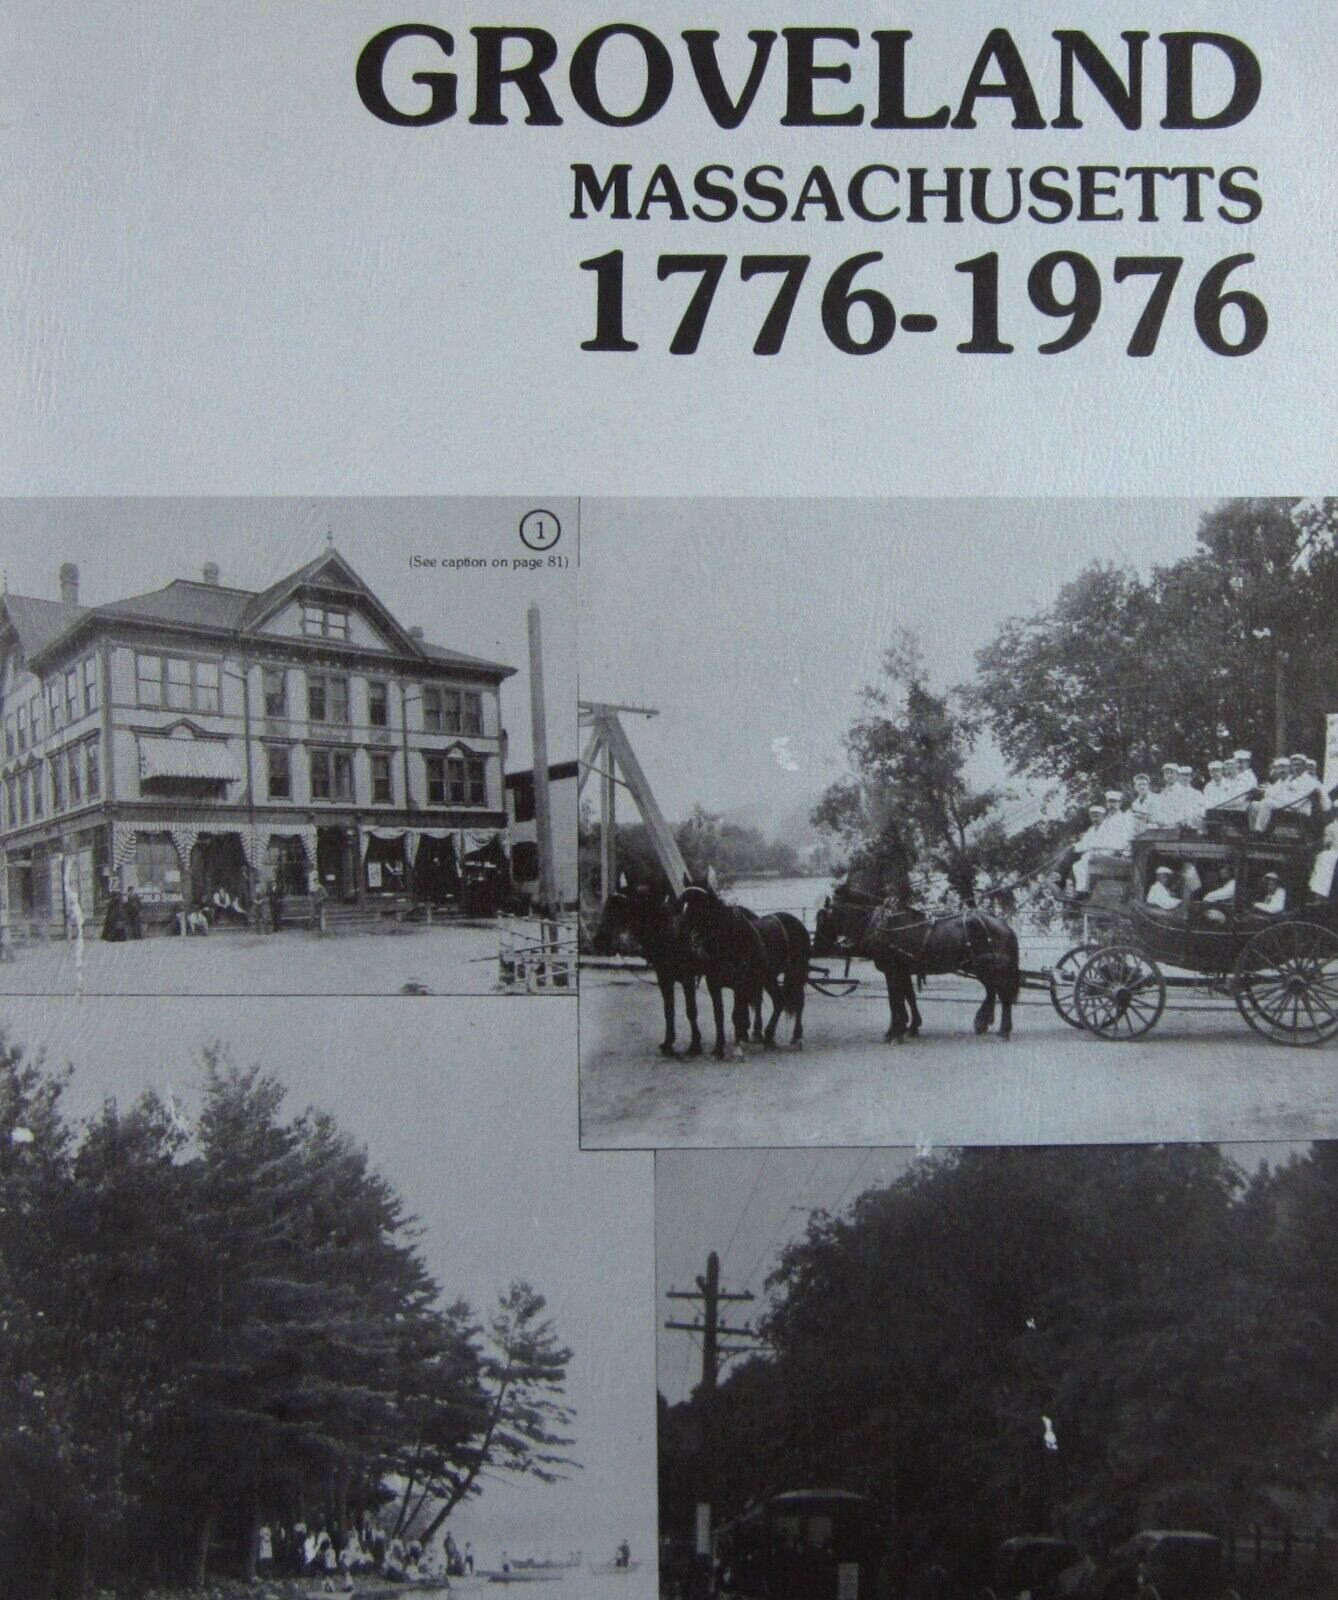 Groveland Essex County Massachusetts History  Photos Maps Bicentennial 1776-1976